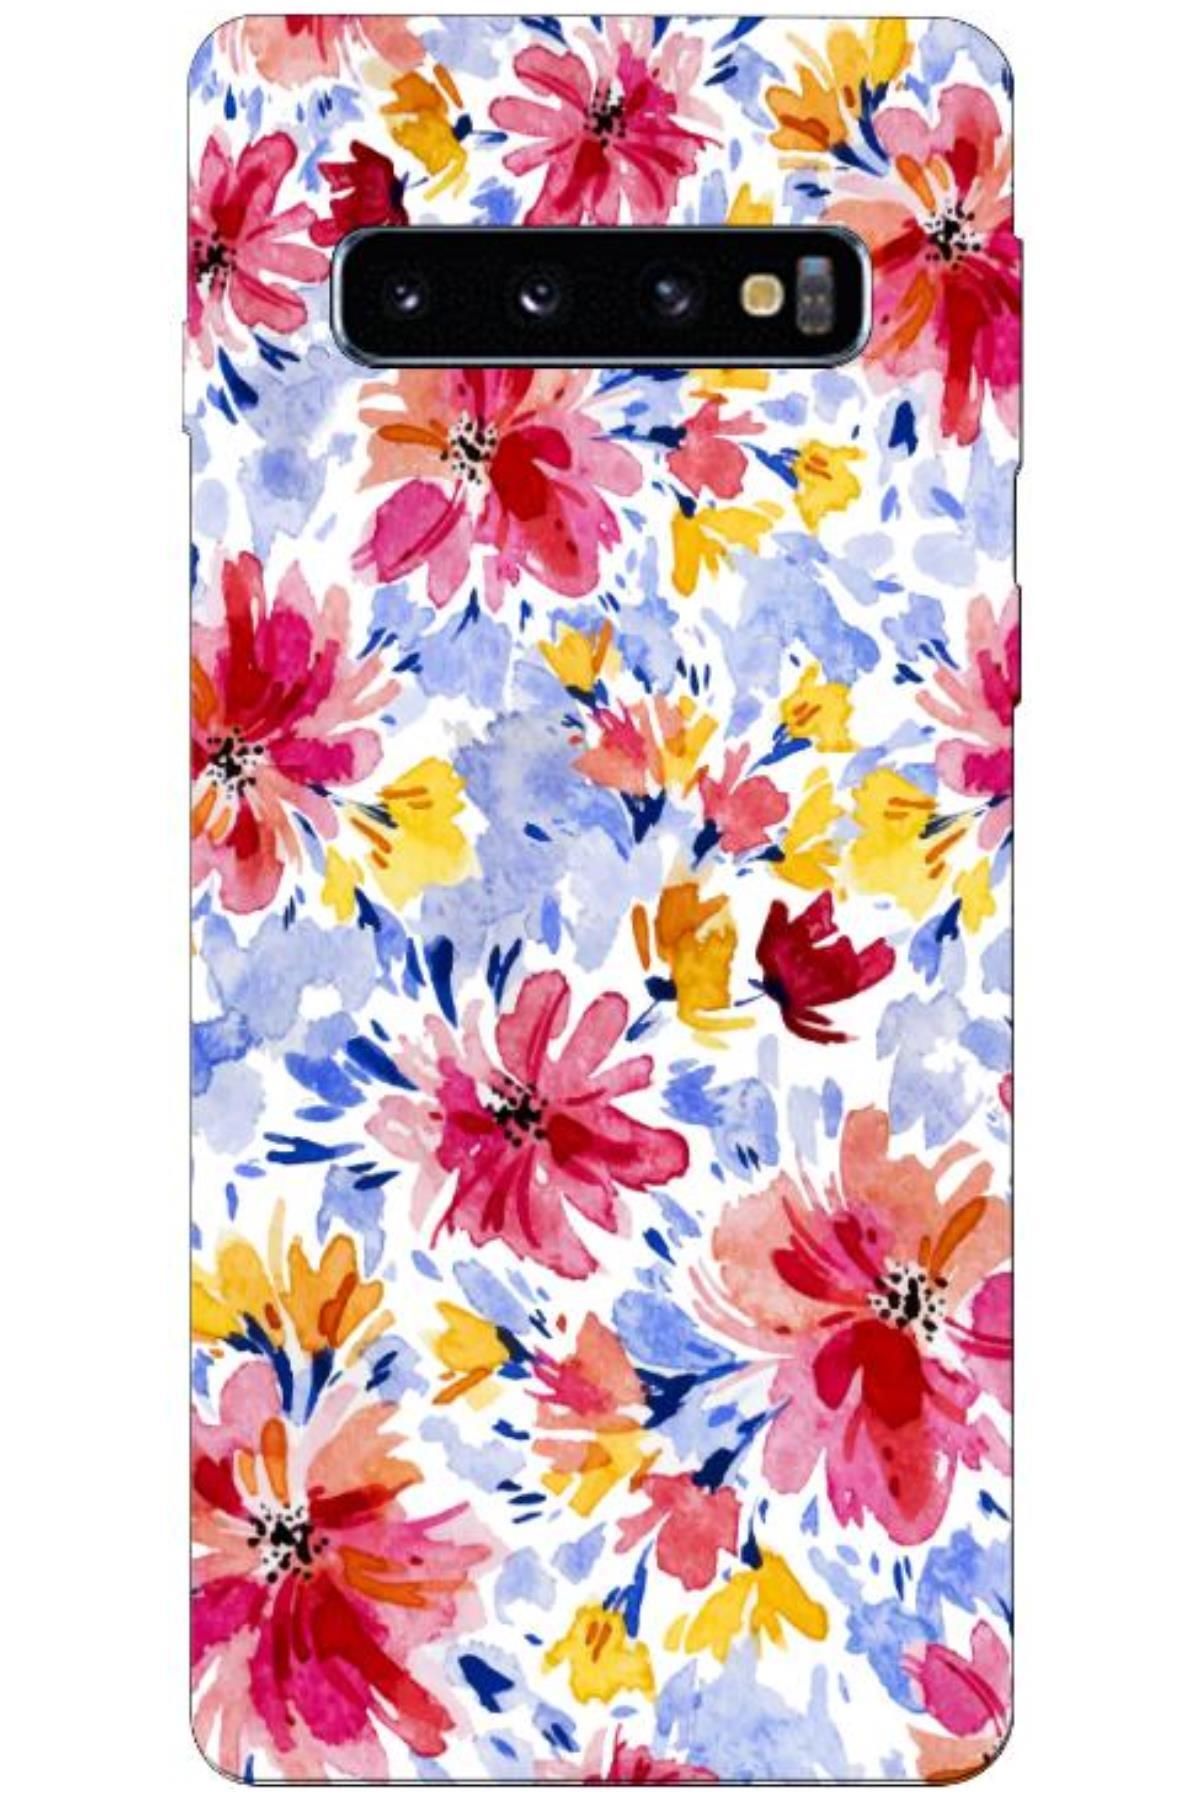 Zebana Samsung Galaxy S10 Uyumlu Kılıf Bahar Çiçekleri 7 Silikon Kılıf (BASKILI)